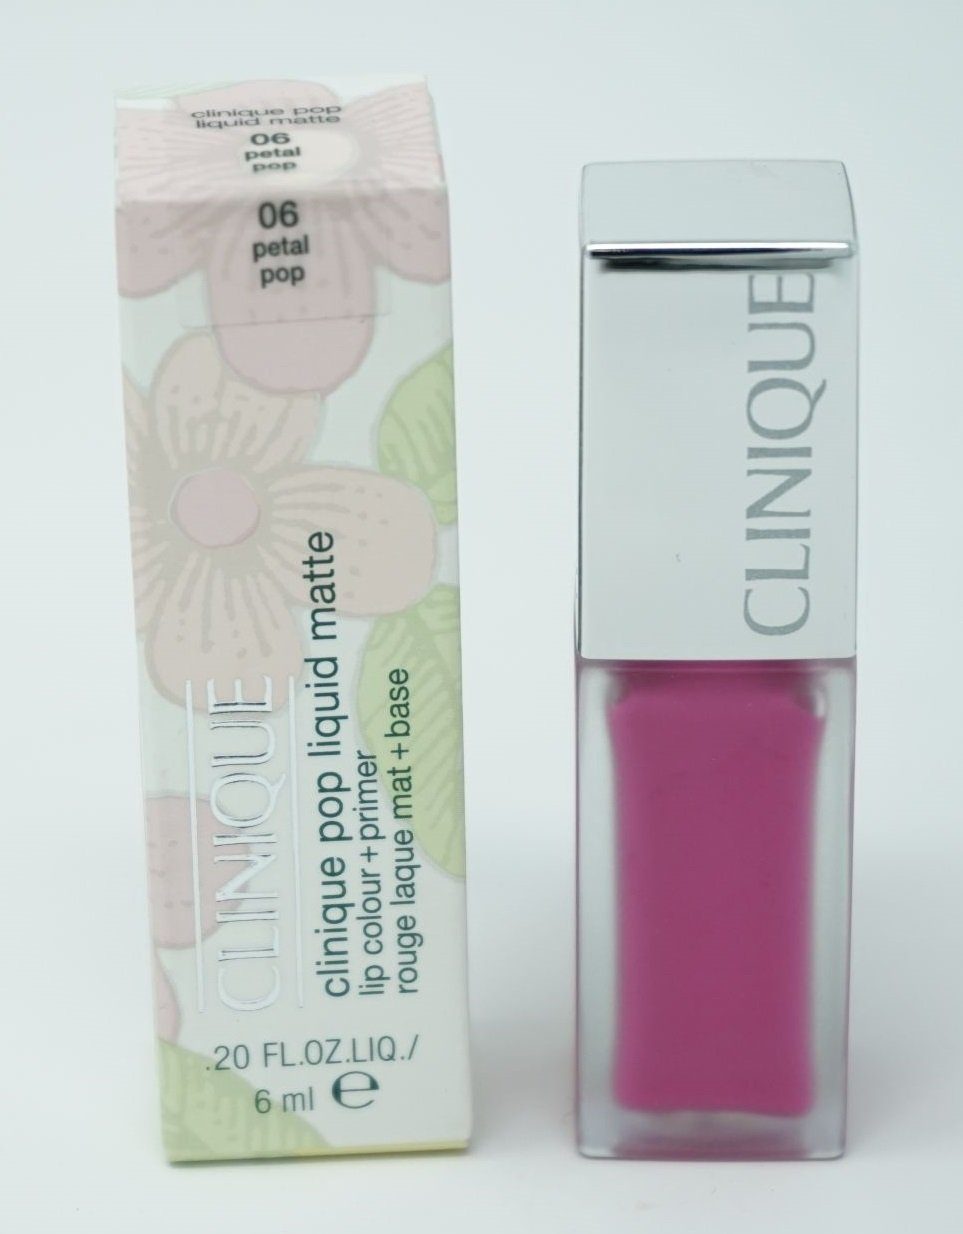 CLINIQUE Lippenstift Clinique Pop liquid Matte Lippenstift 6ml / 06 Petal pop